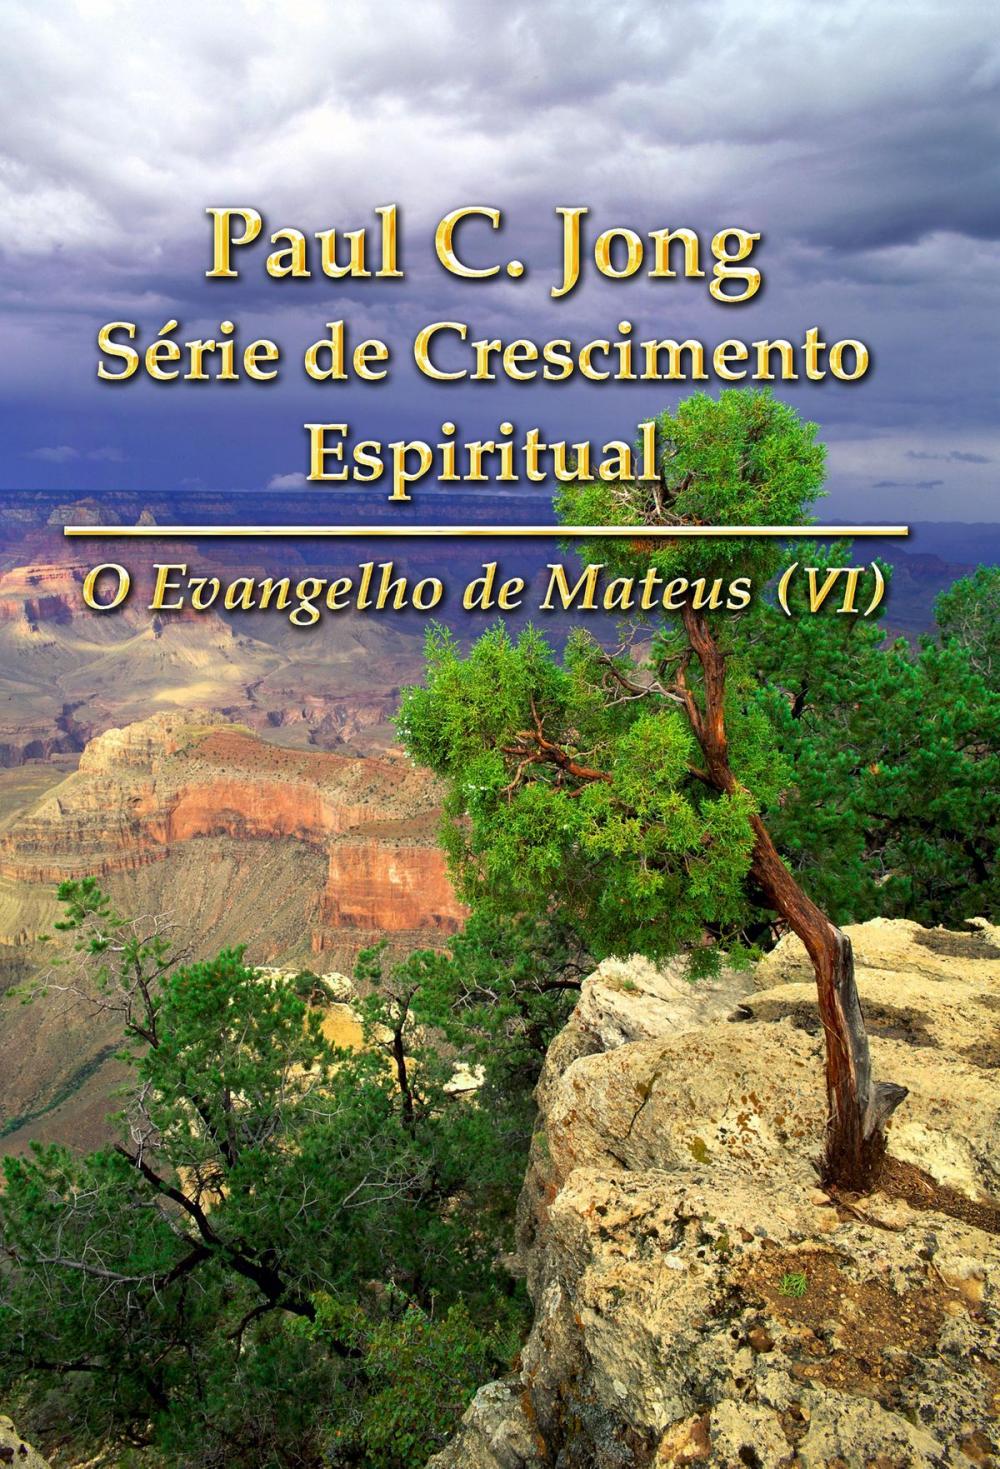 Big bigCover of O Evangelho de Mateus (VI) - Paul C. Jong Série de Crescimento Espiritual